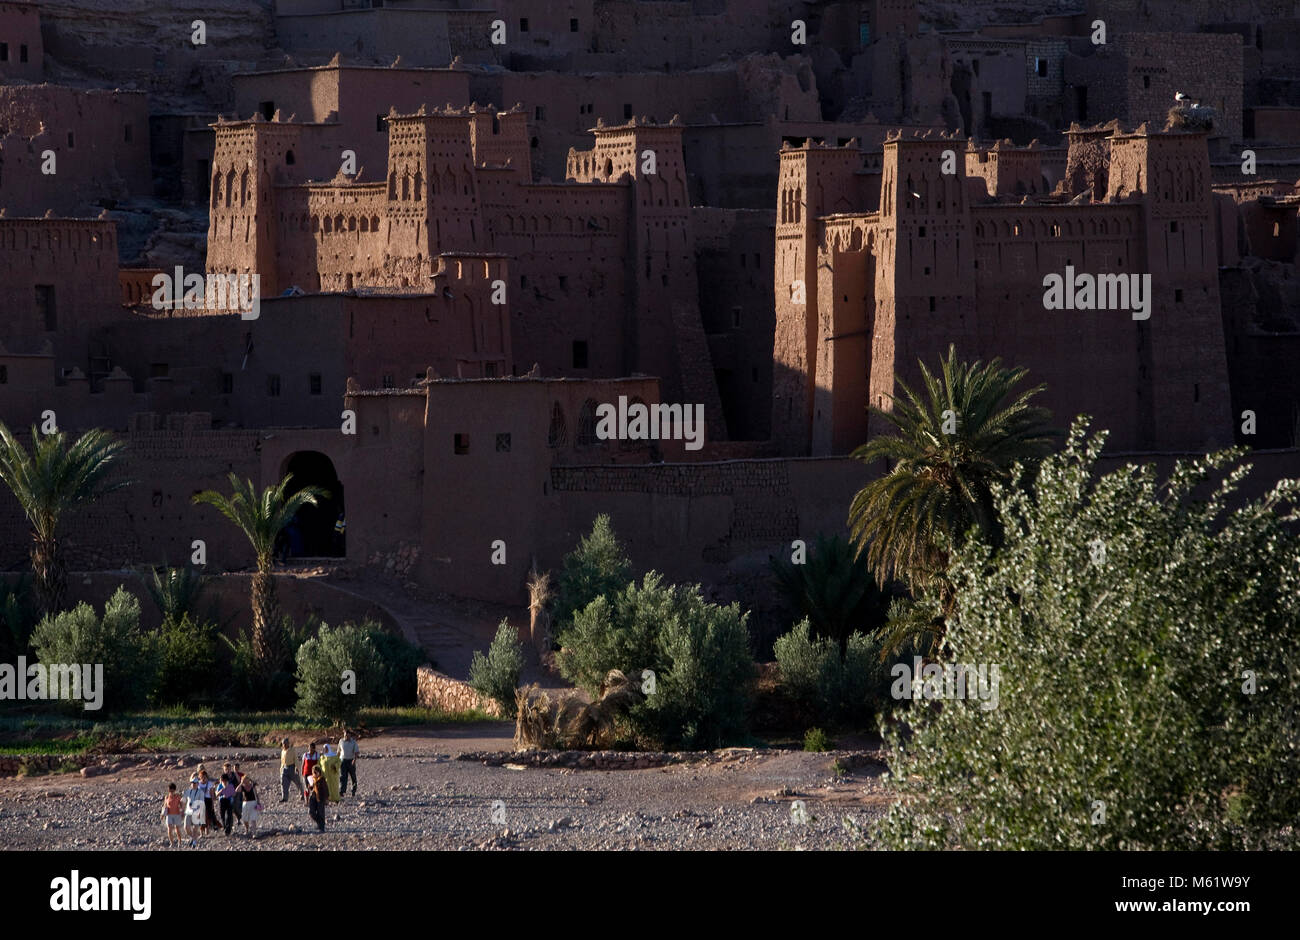 AIT BENHADDOU, Marokko; das Dorf und die Kasbah von Ait Benhaddou im südlichen Marokko ist eine historische Festungsstadt, die in zahlreichen Fei verwendet wurde Stockfoto